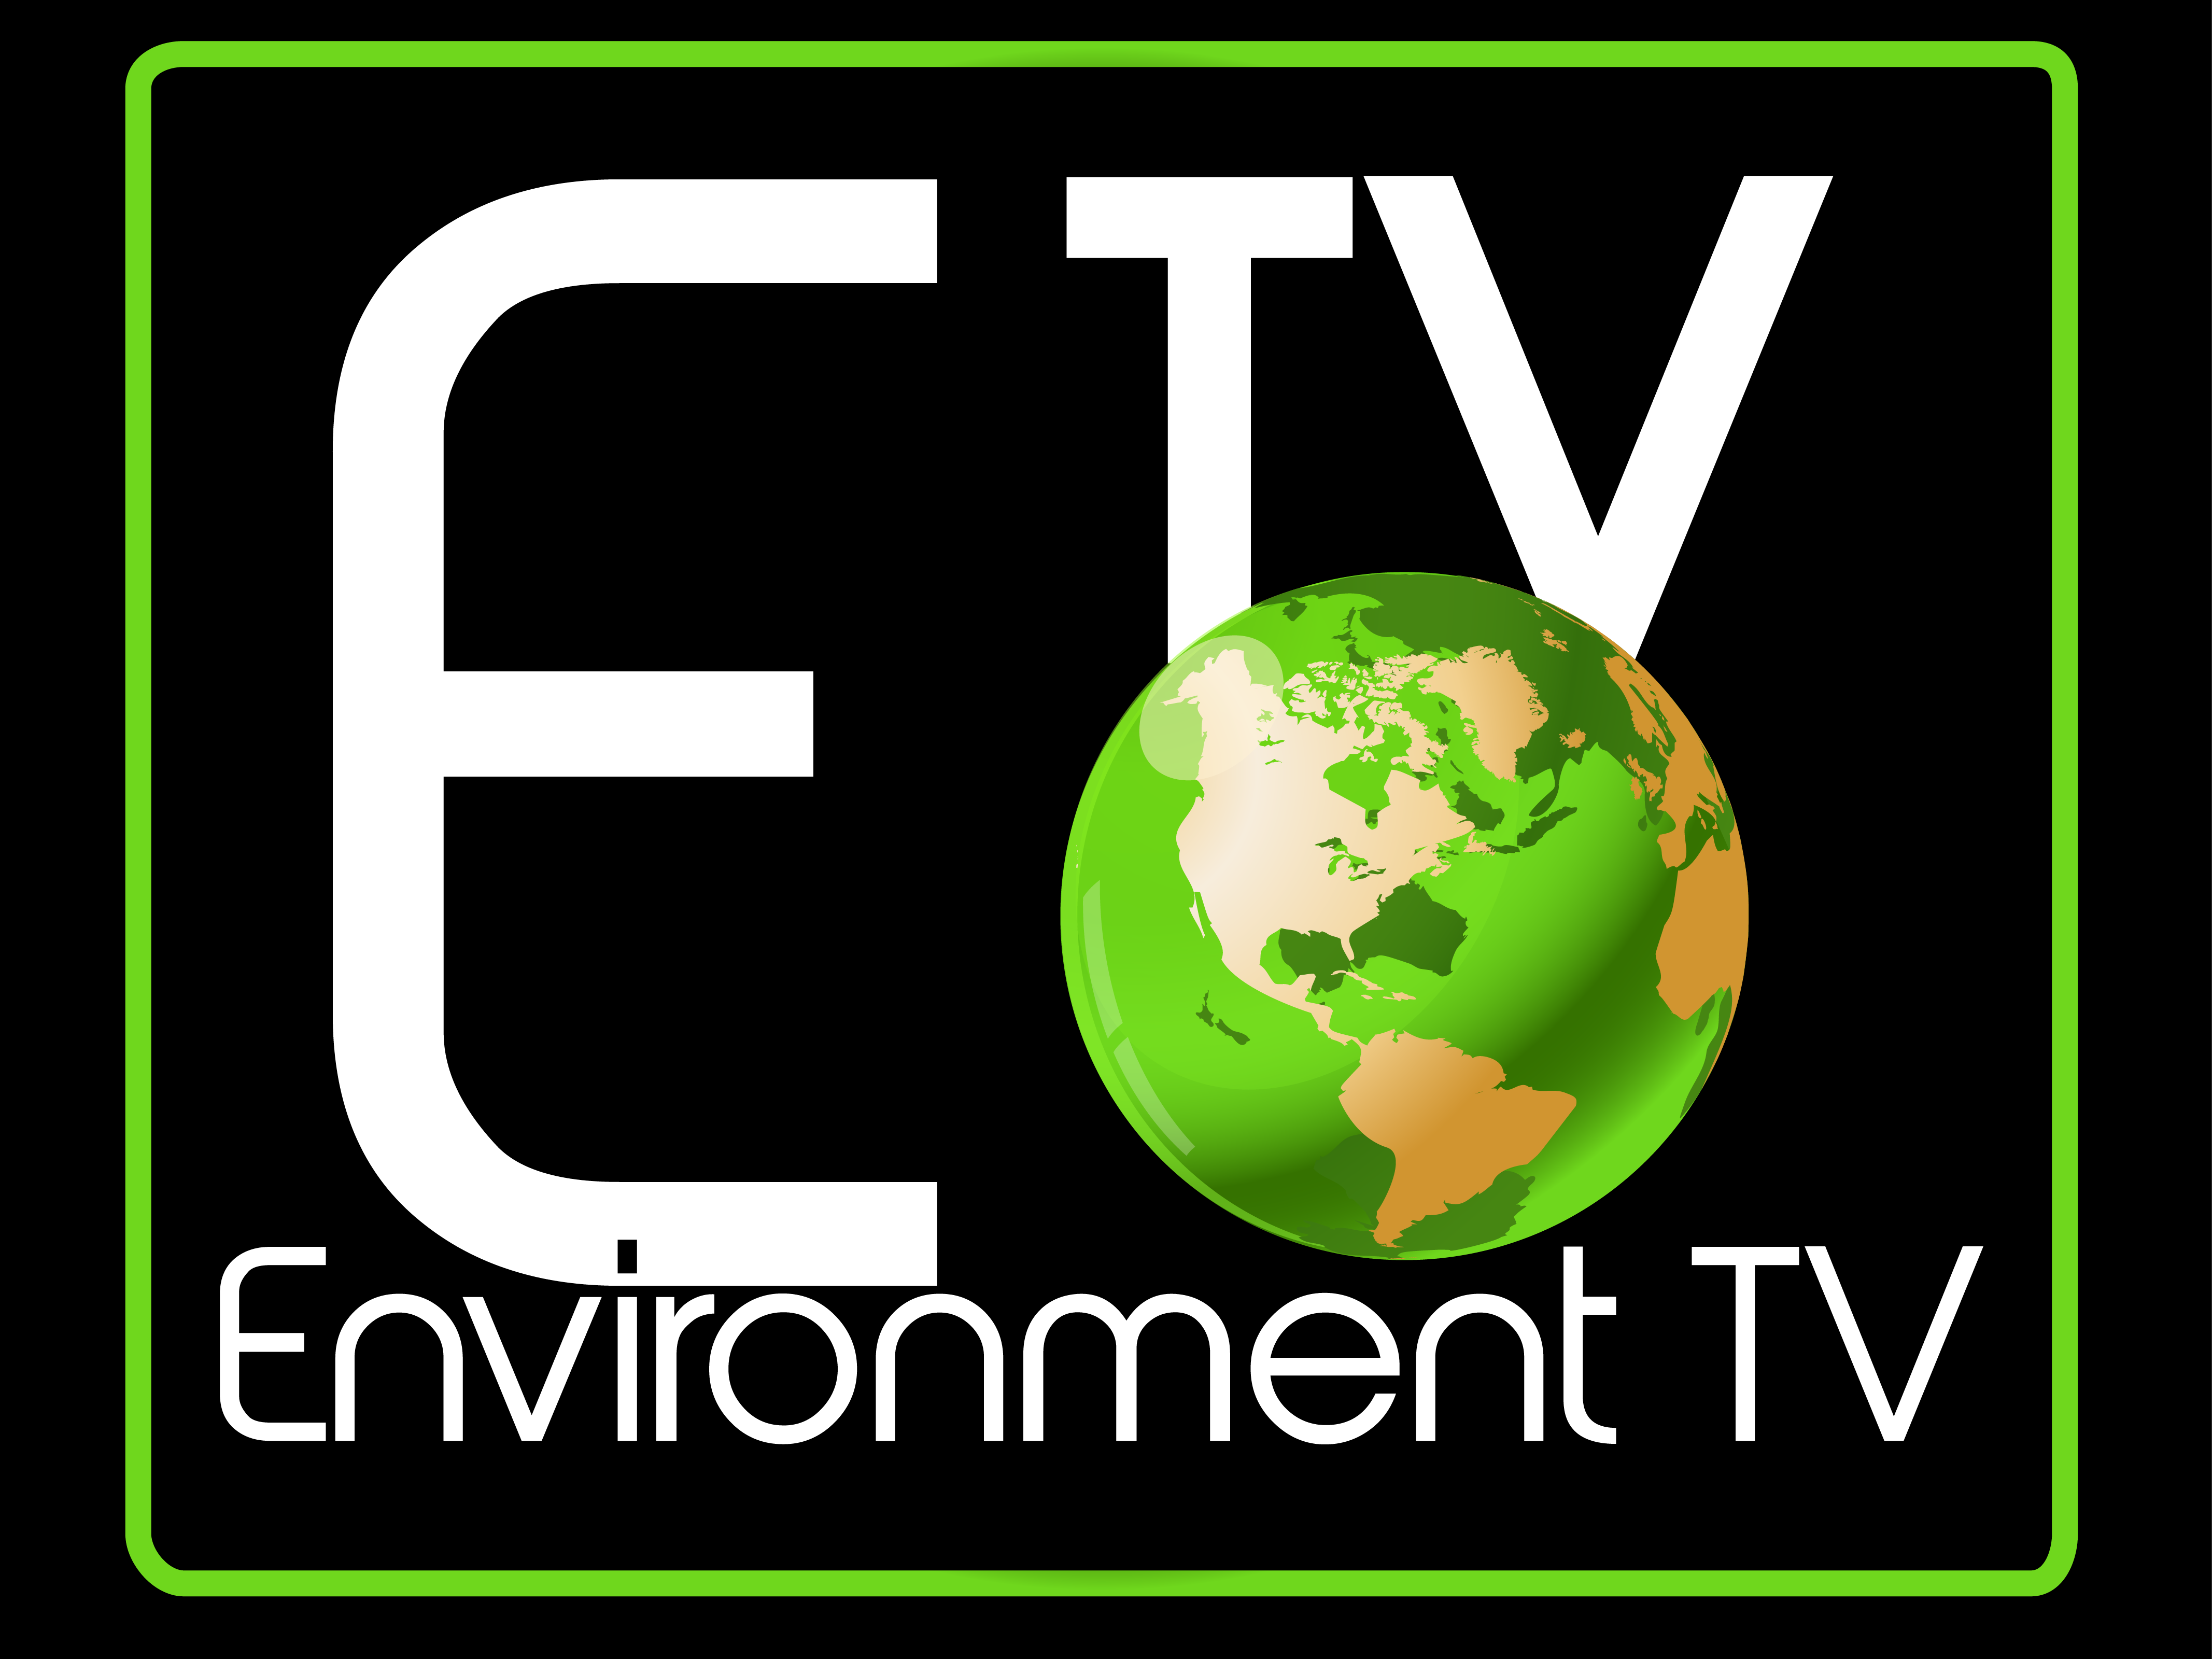 The Environment TV logo